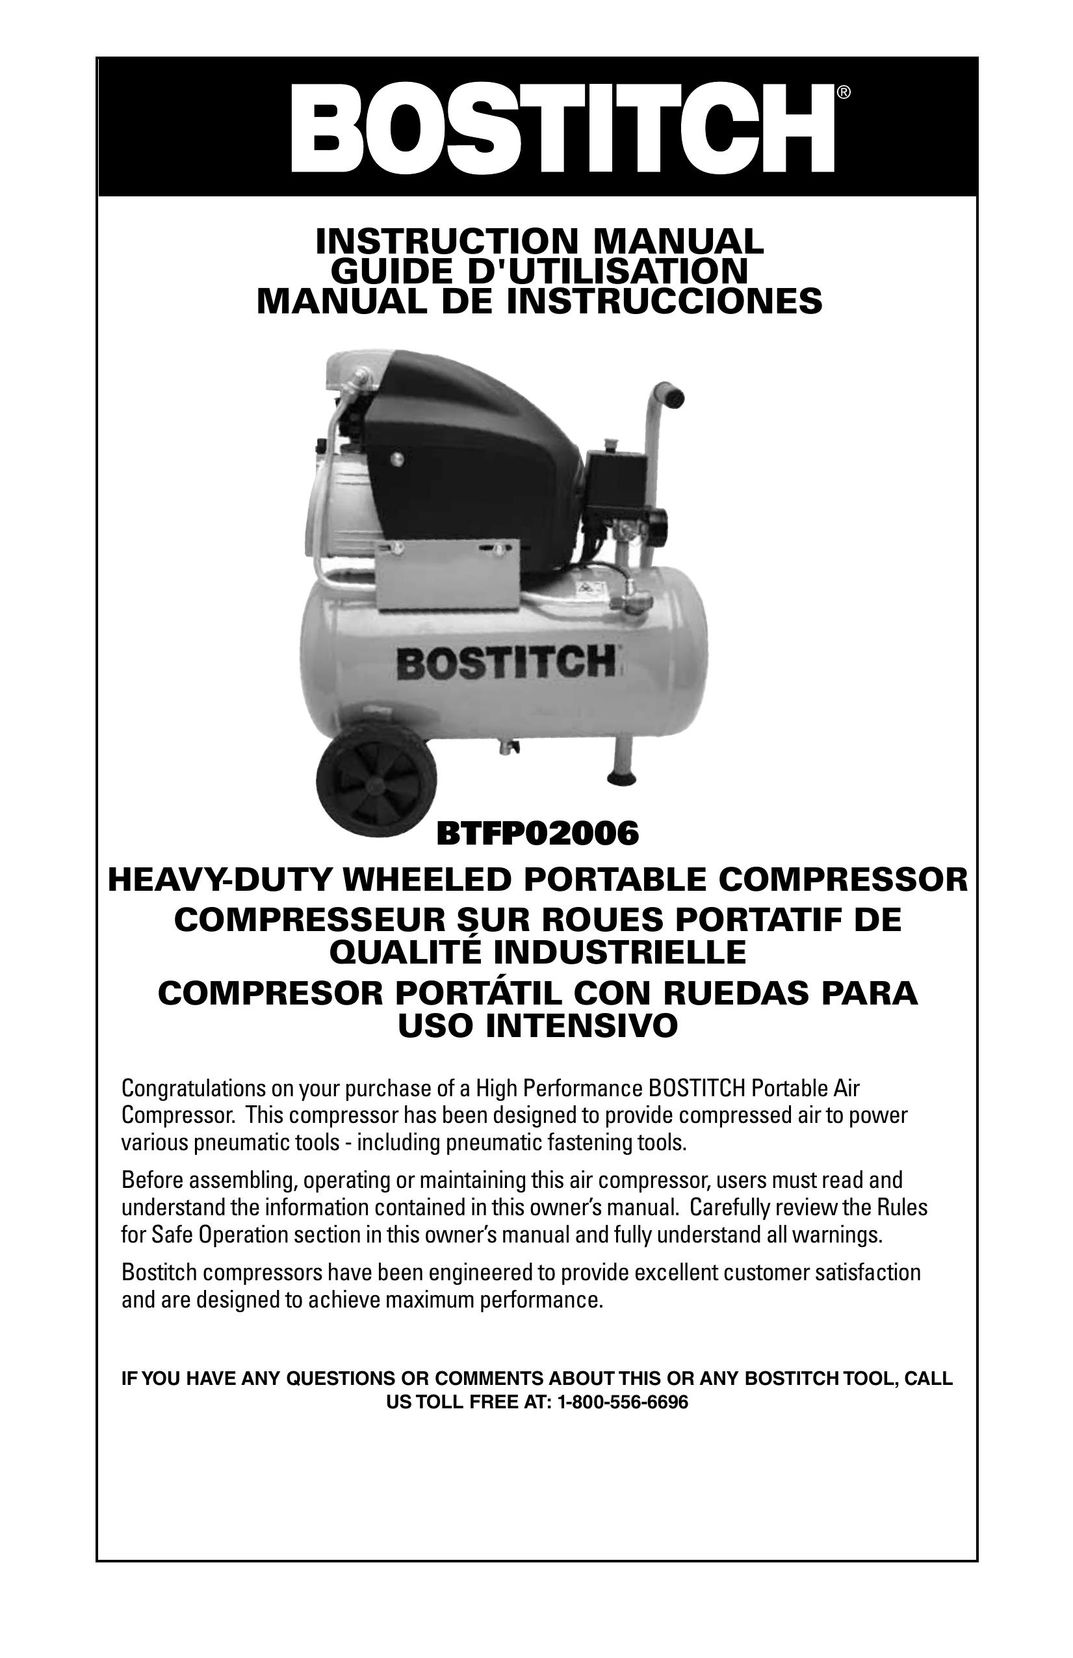 Bostitch BTFP02006 Air Compressor User Manual